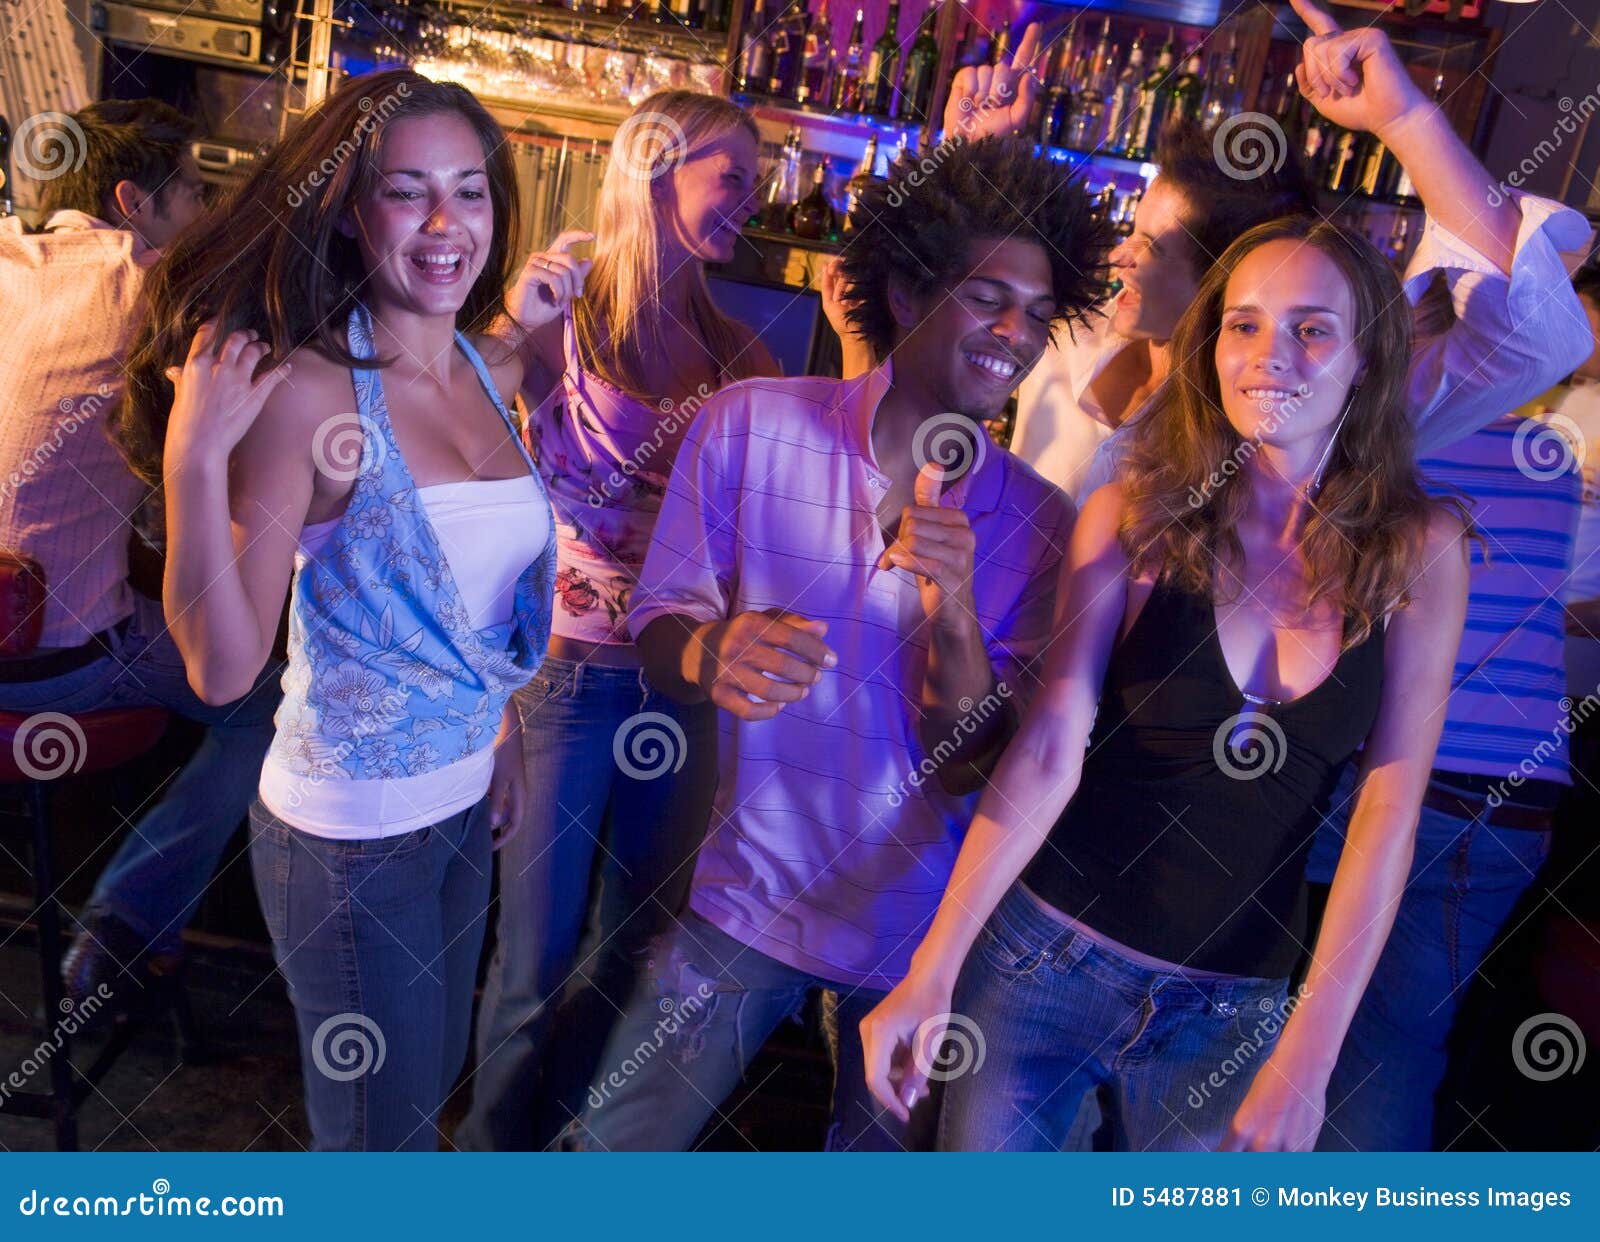 young men and women dancing in a nightclub